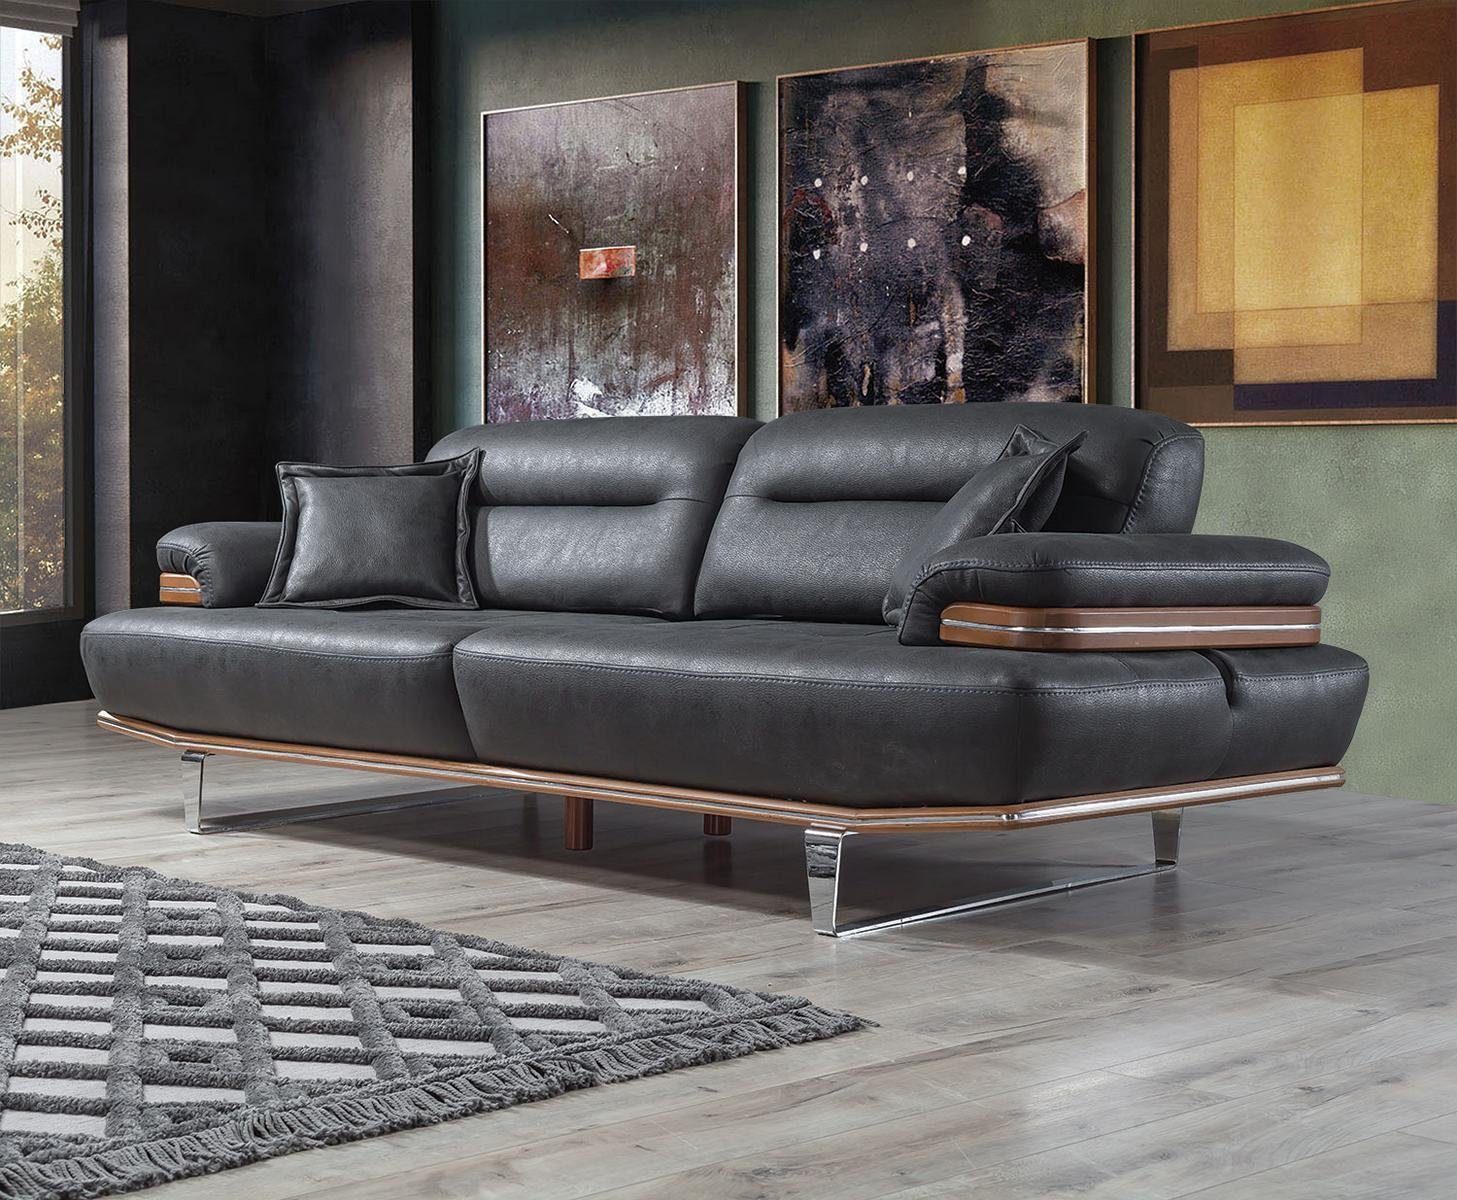 JVmoebel Sofa Wohnzimmer Sofa Couch Modern Dreisitzer Modern Polster Sitz Designer, 1 Teile, MAde in Europa